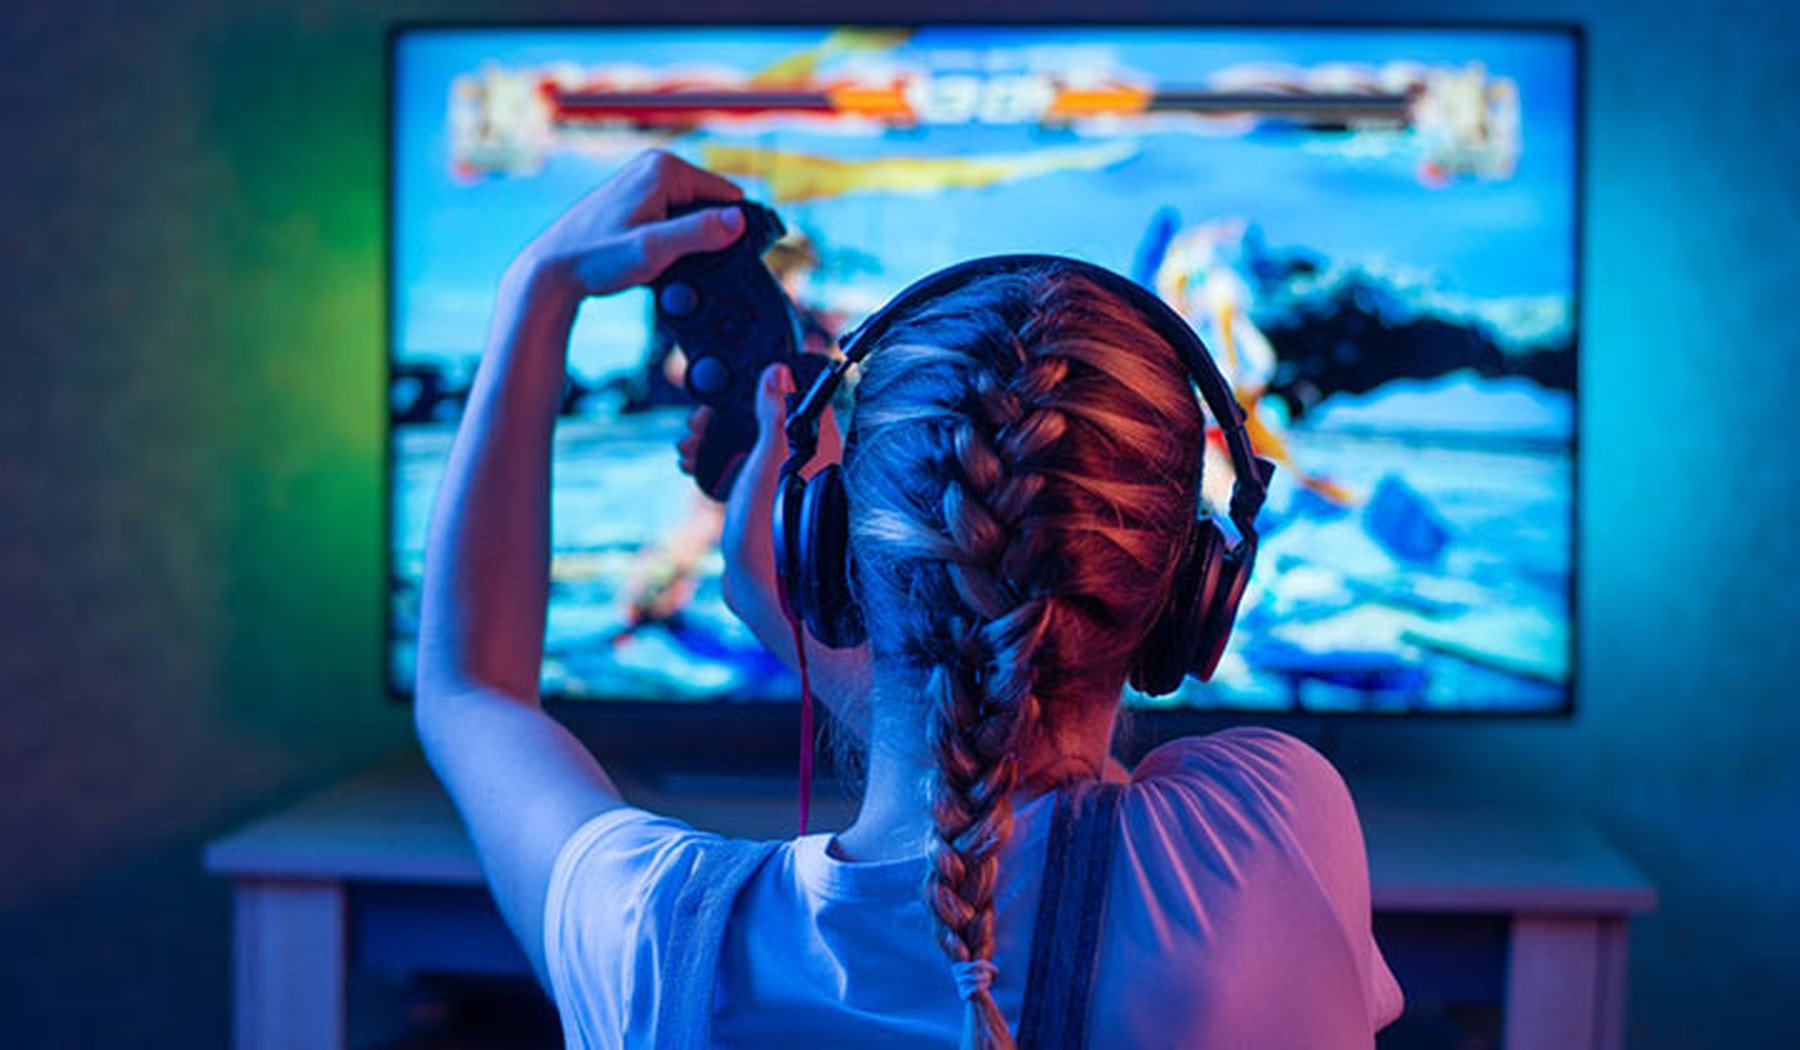 chica rubia con una trenza y cascos de gamer jugando a un videojuego en la televisión